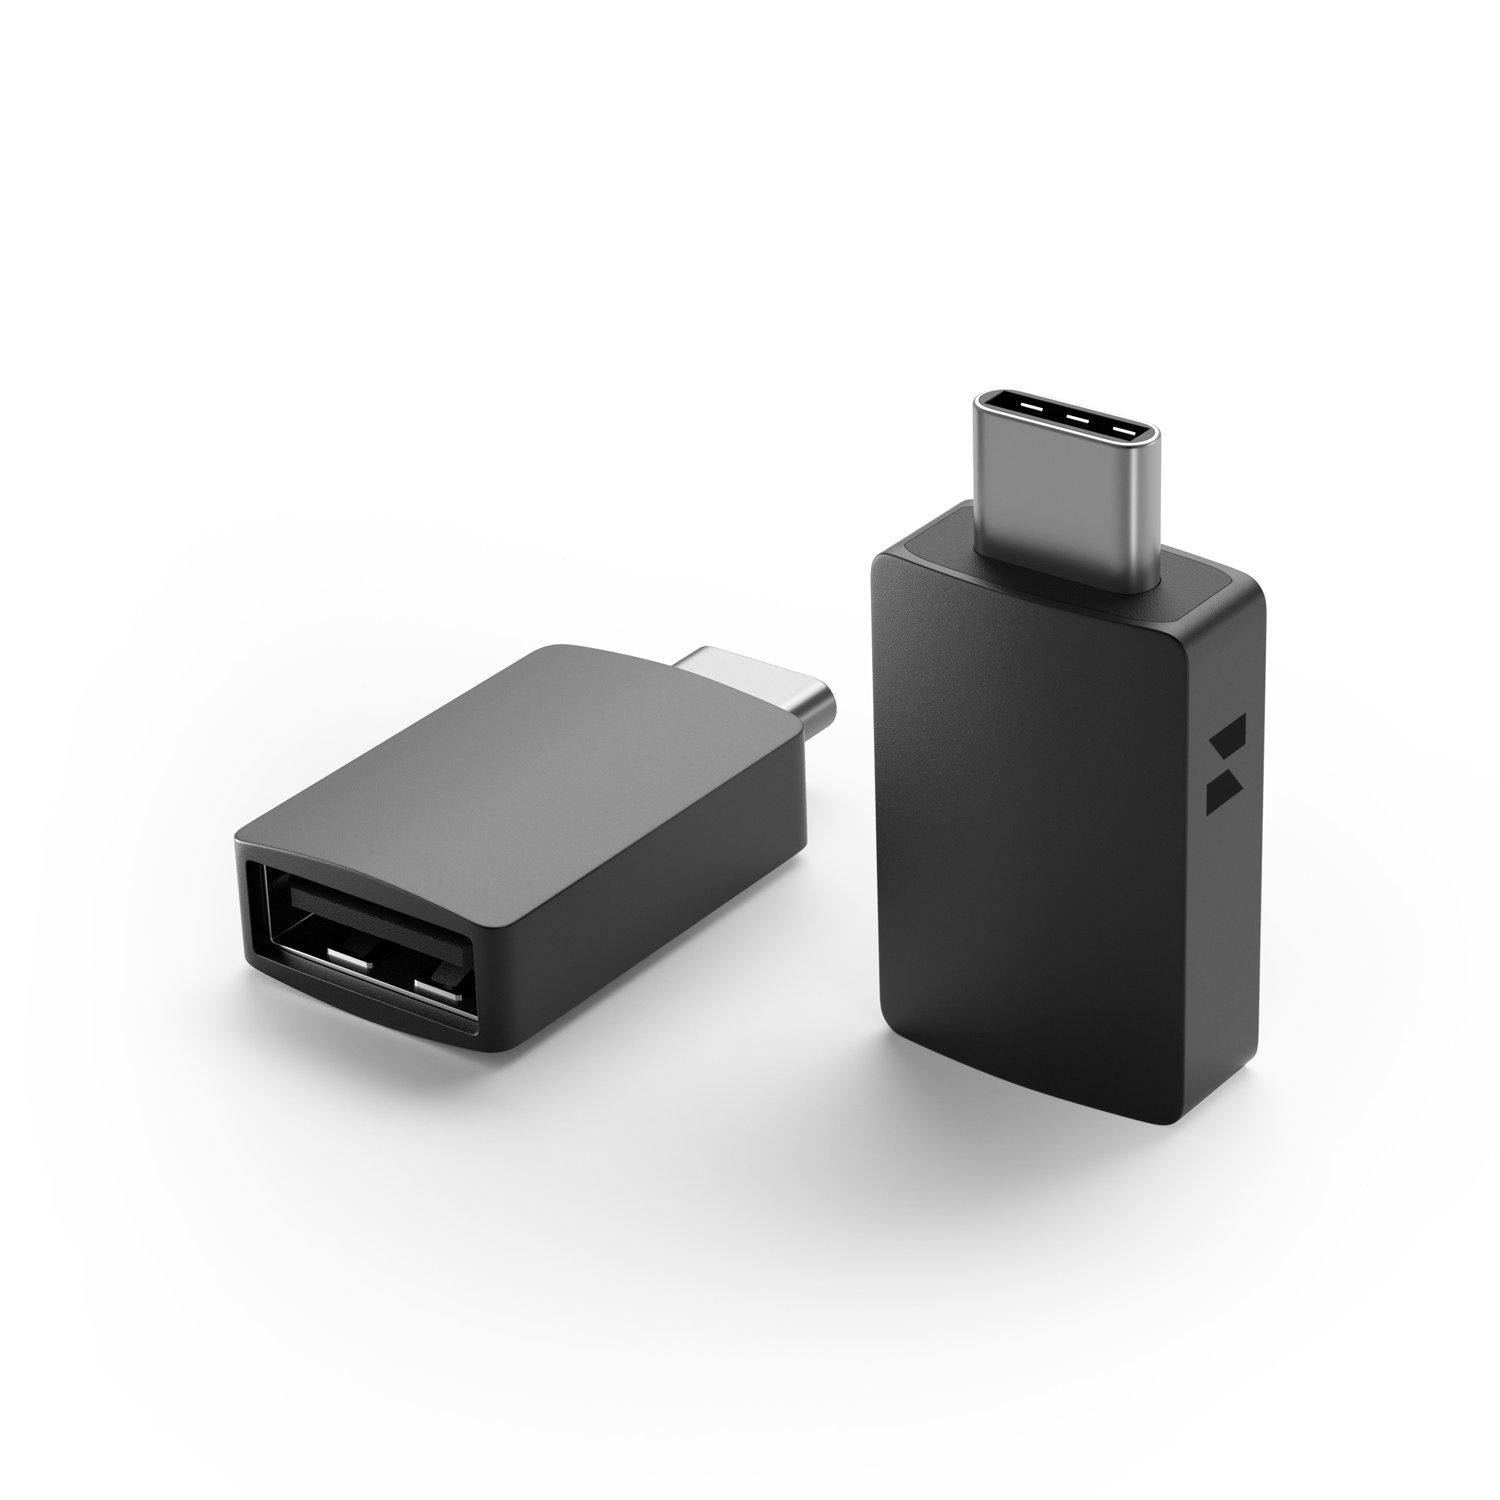 Adaptador uni® USB C a USB, Adaptador USB tipo C, Dongle USB C